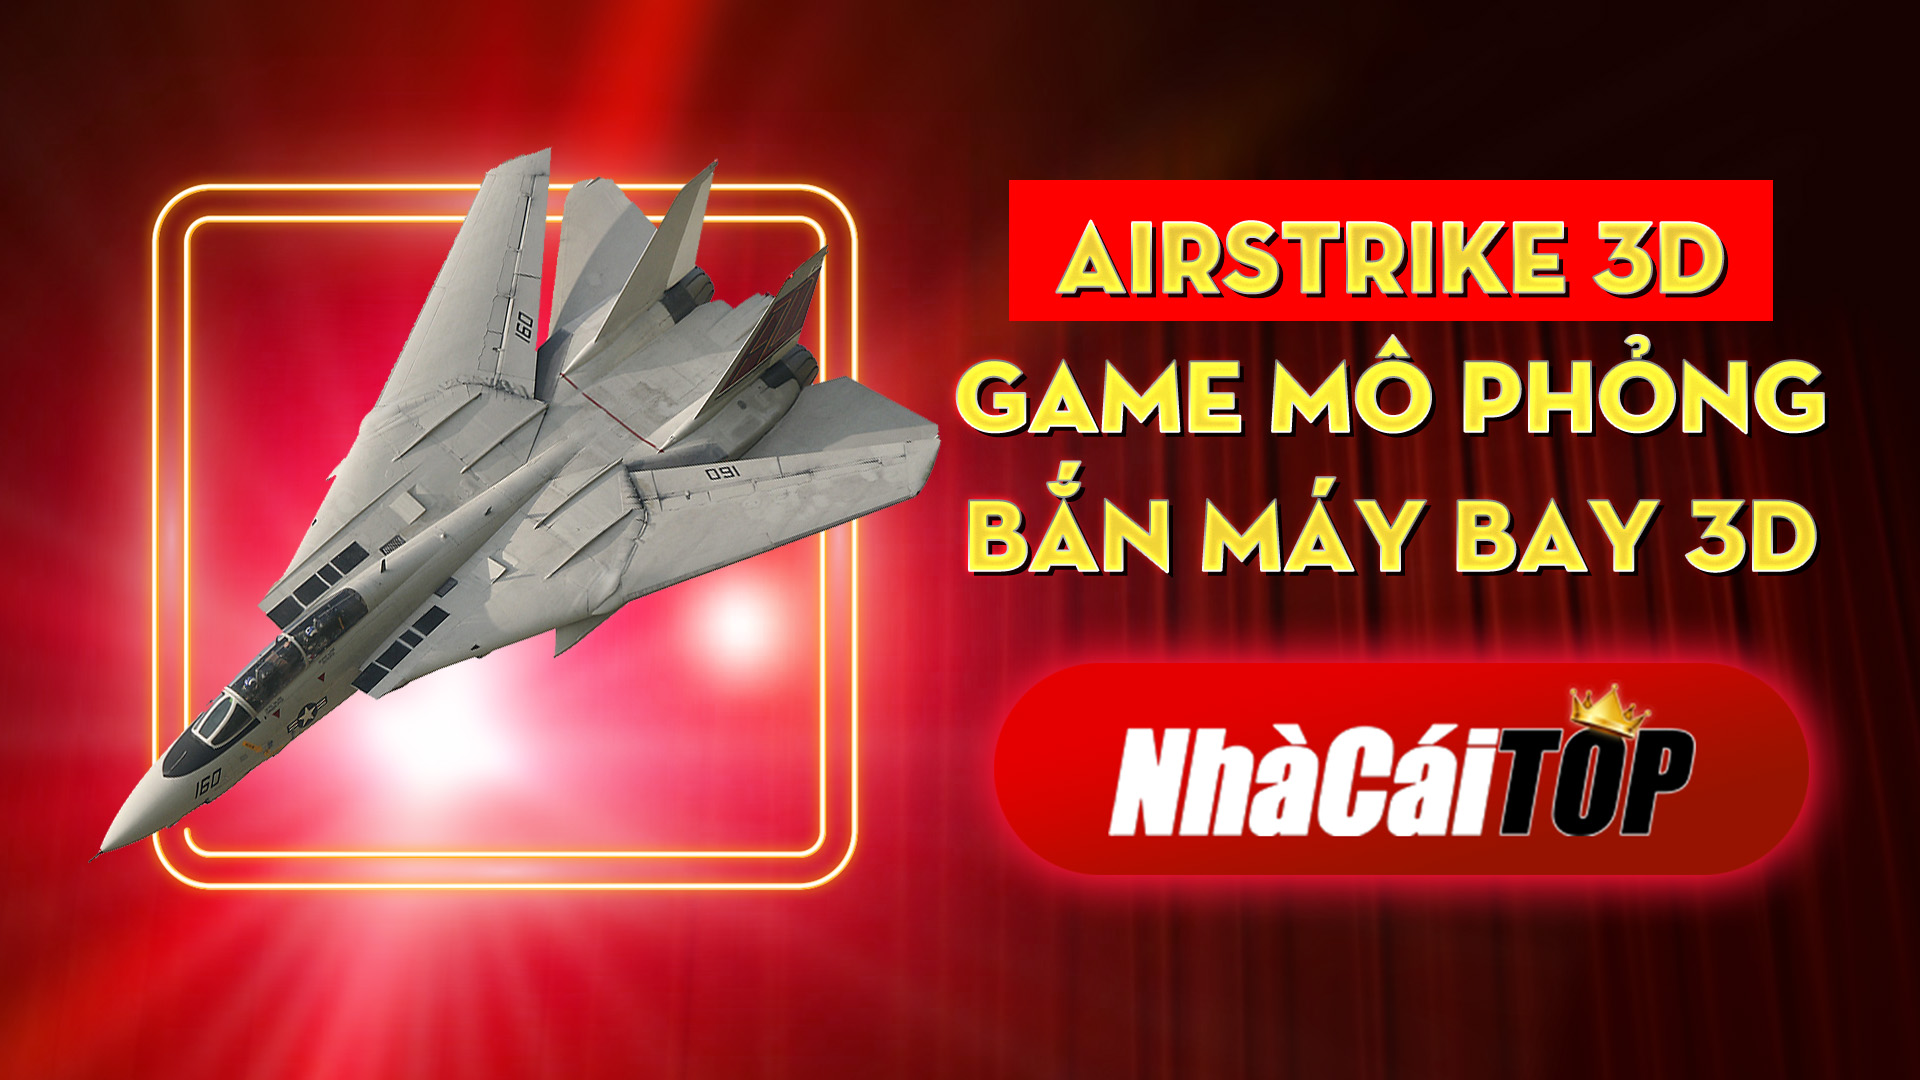 324 Airstrike 3d – Game Mo Phong Ban May Bay 3d